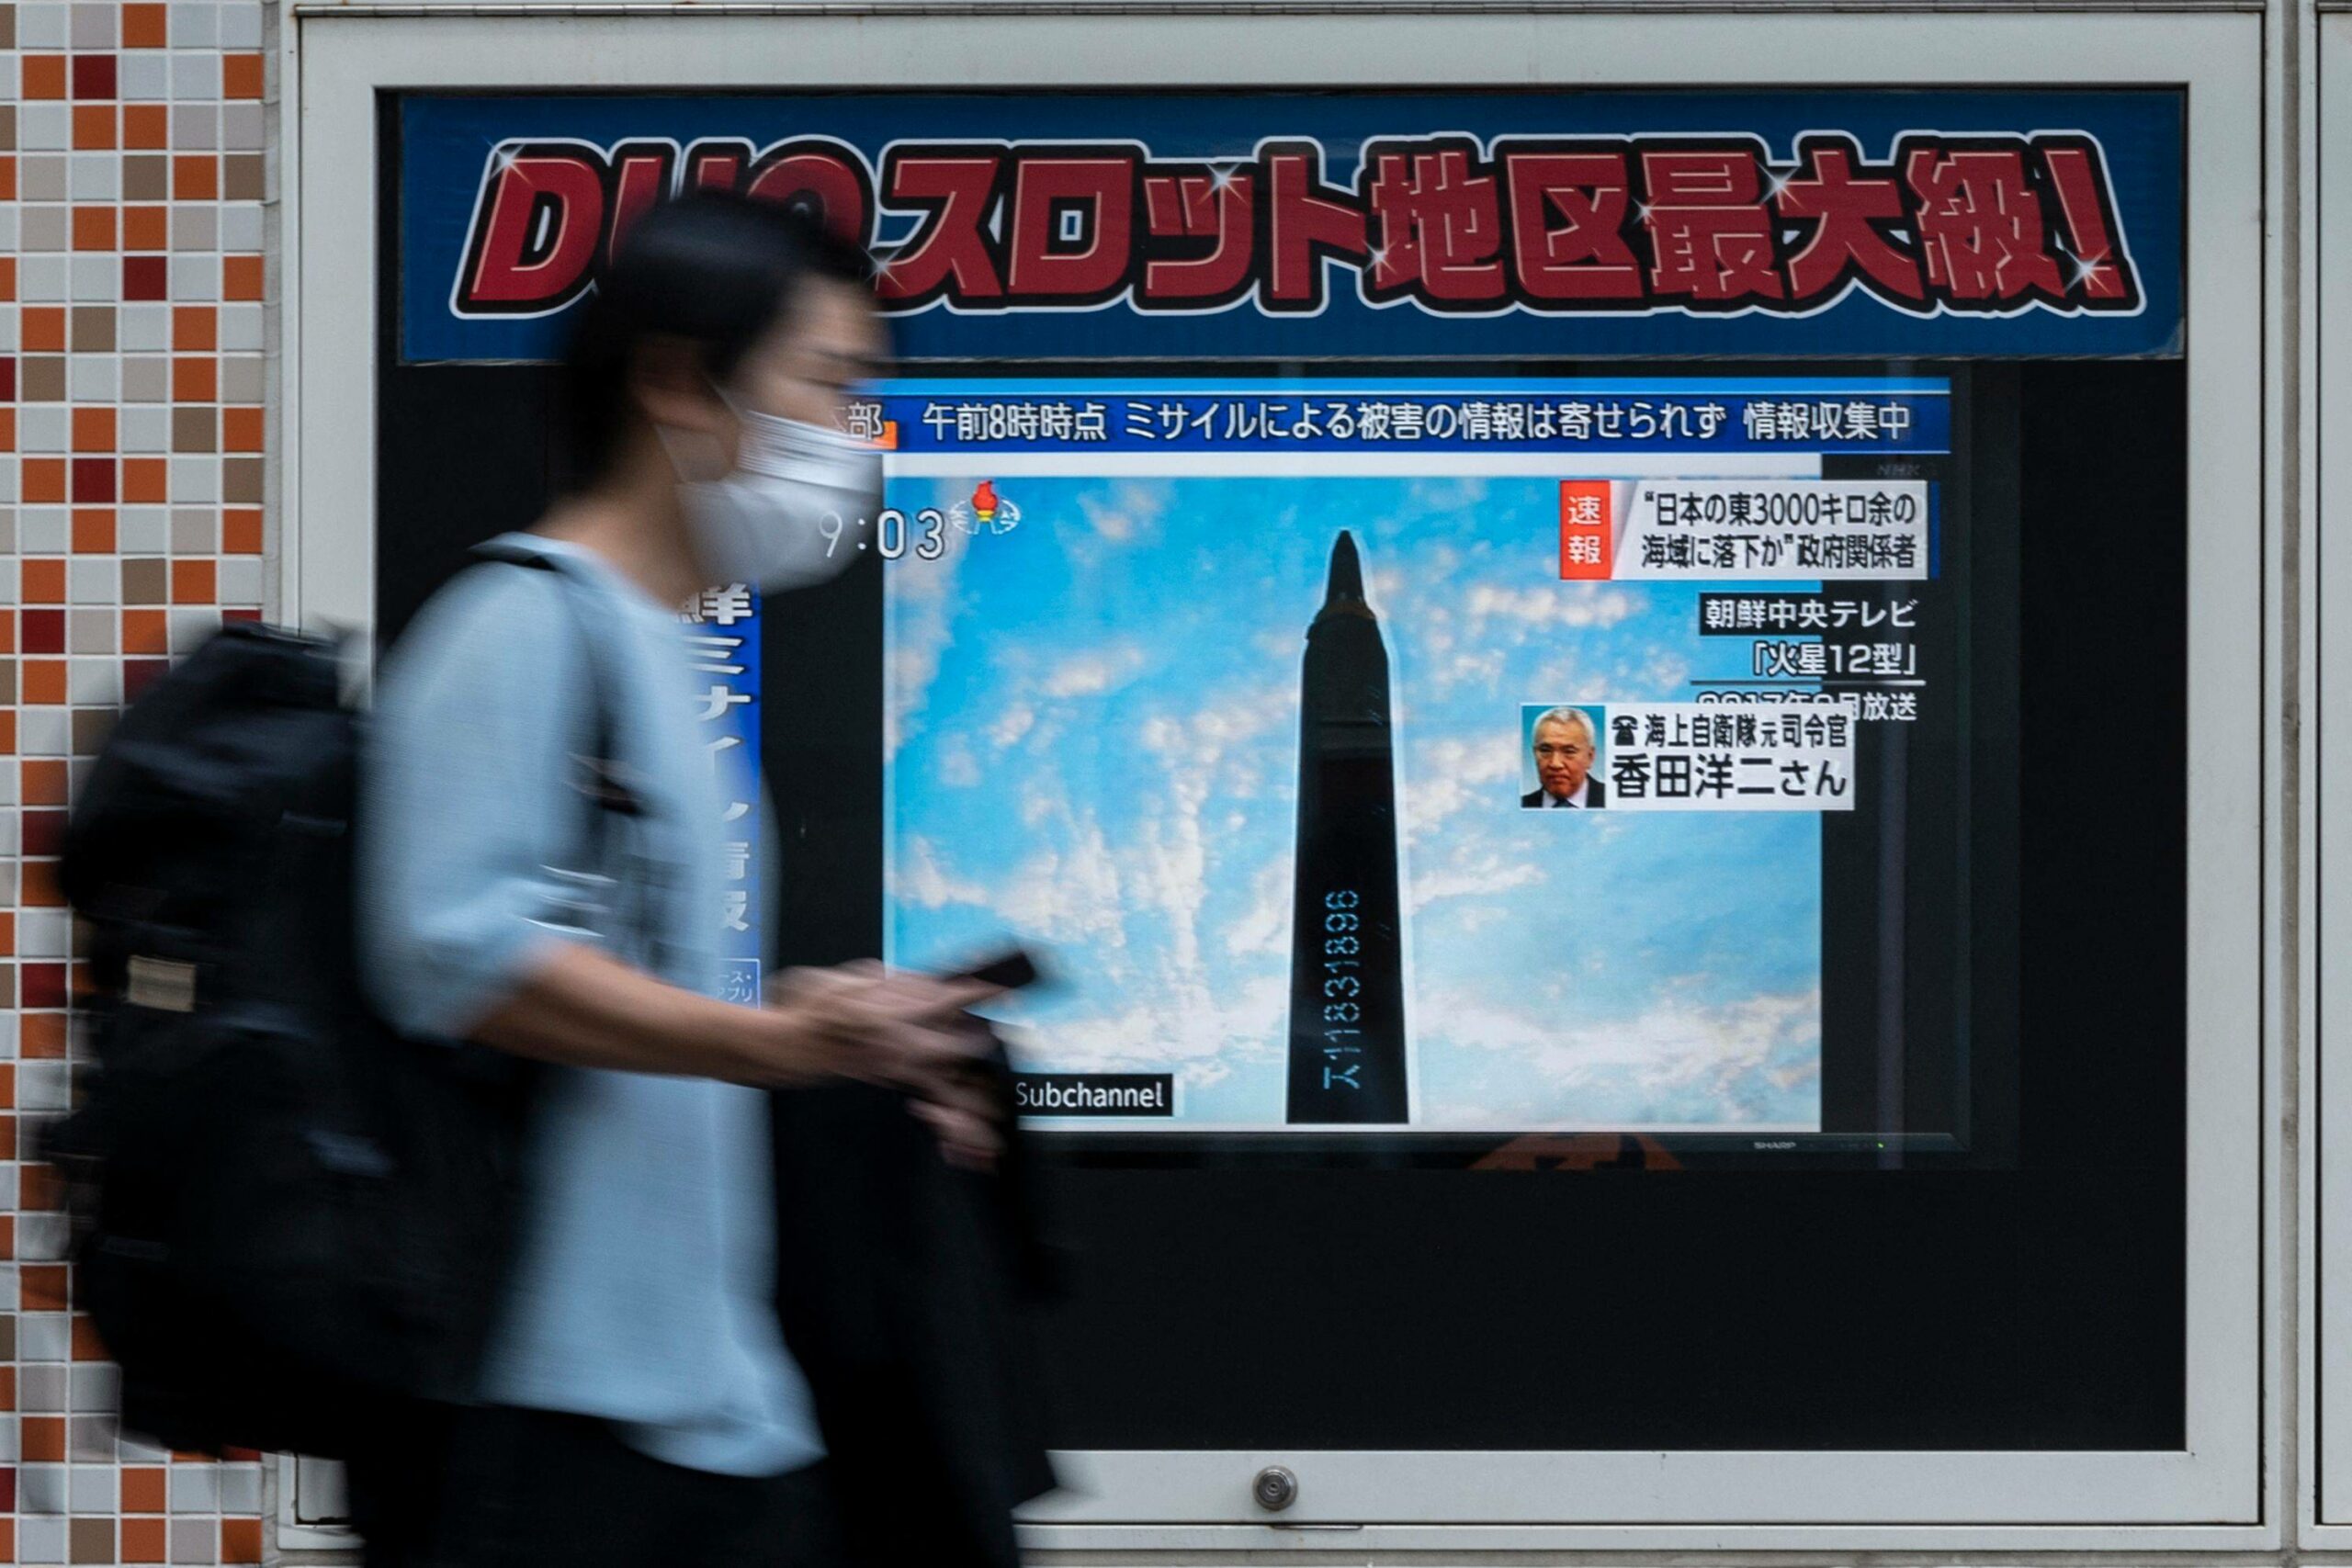 КНДР запустила баллистическую ракету над Японией: в стране объявляли воздушную тревогу (видео) - 1 - изображение